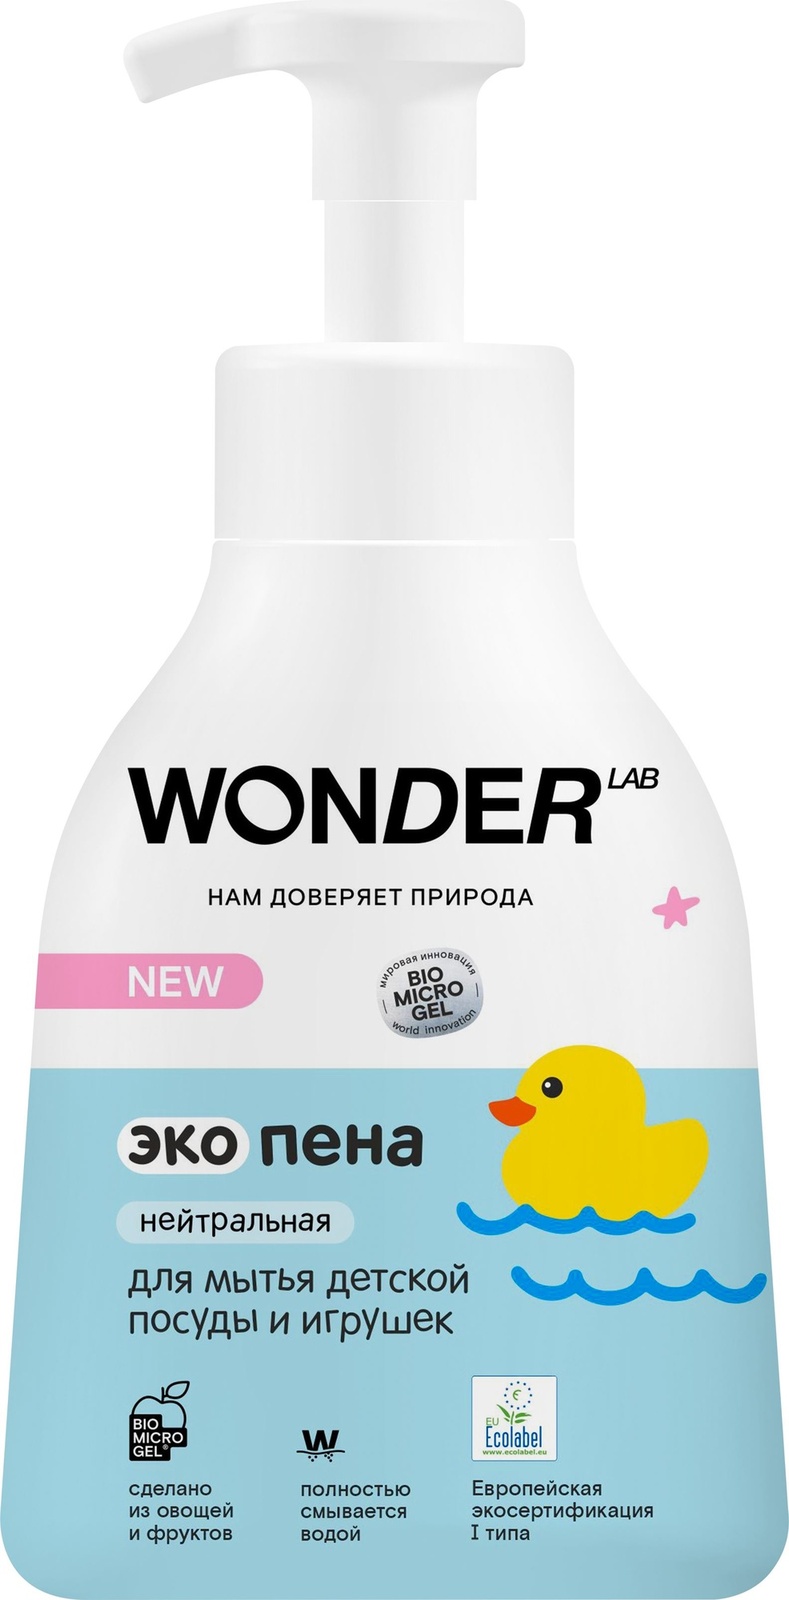 Wonder lab экопена для мытья детской посуды и игрушек (нейтральная) (450 мл)